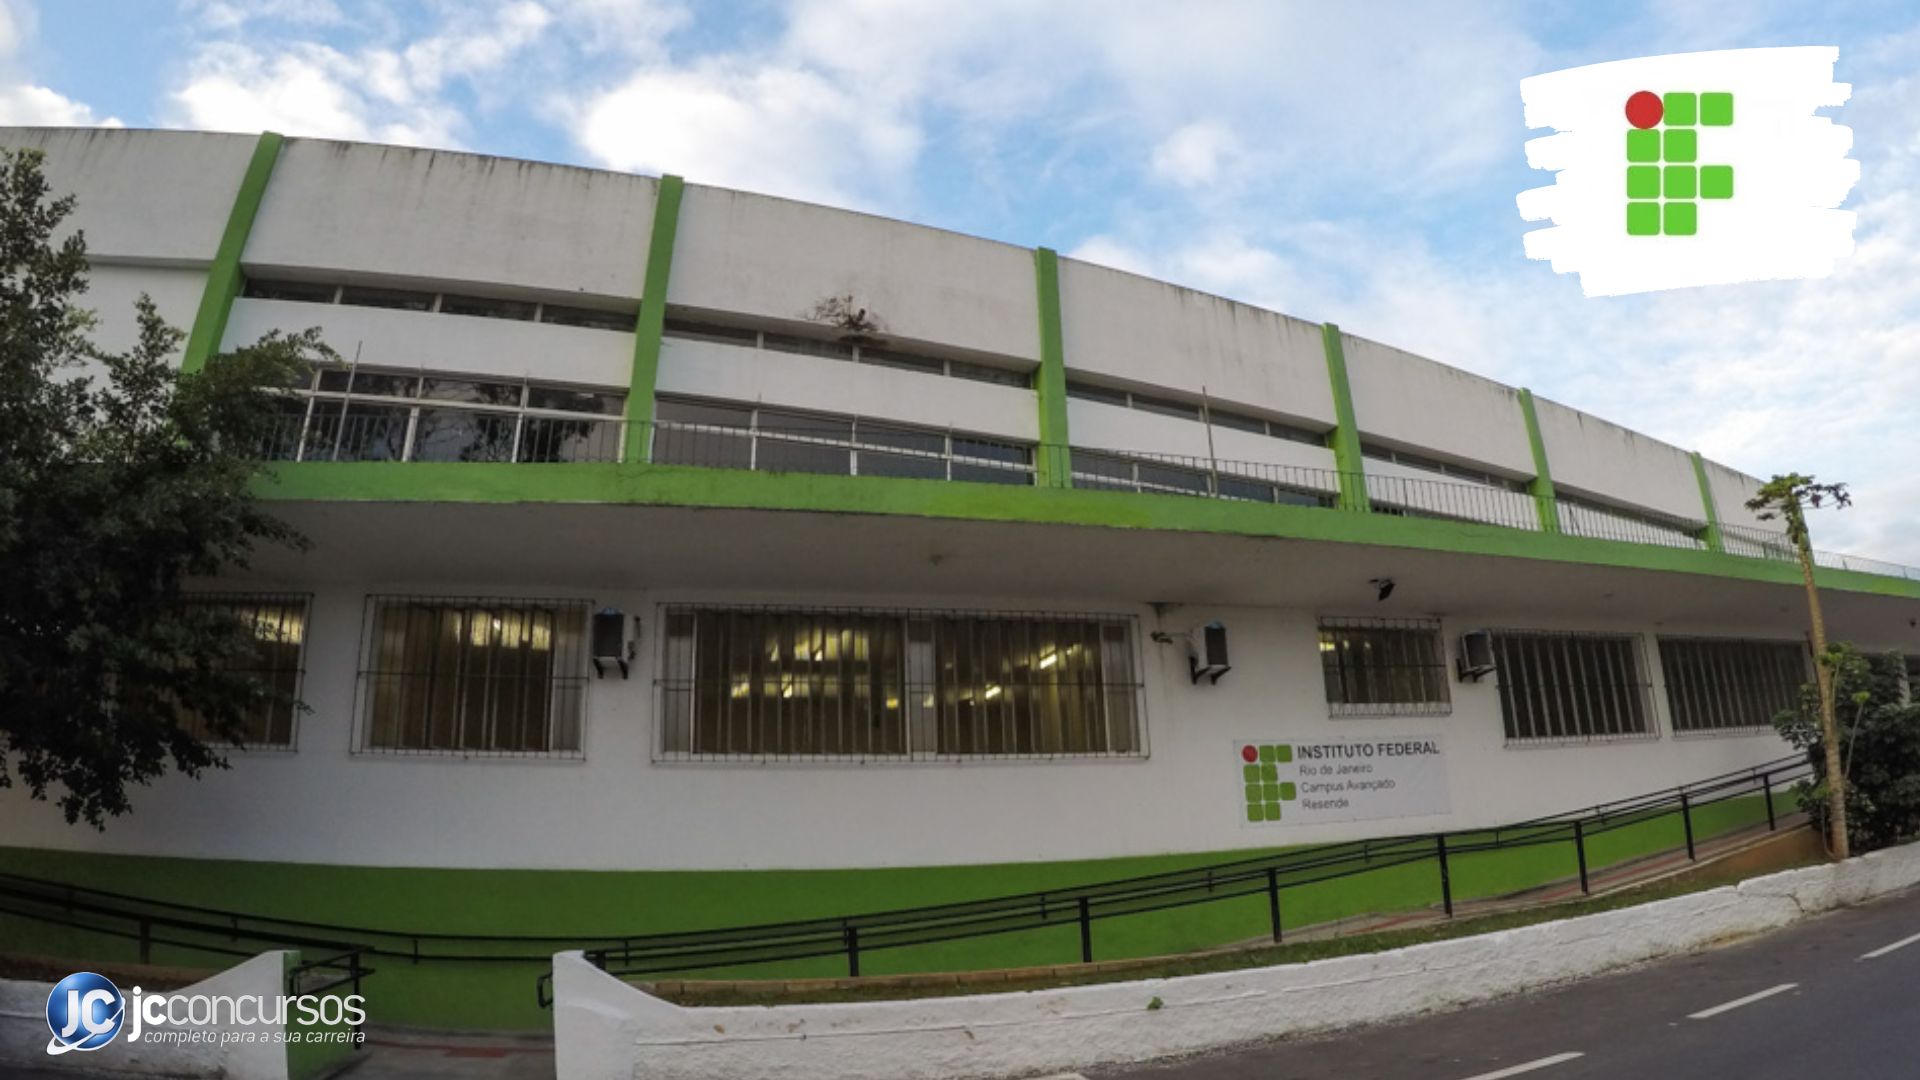 Instituto Federal do Rio de Janeiro - IFRJ - Você conhece os